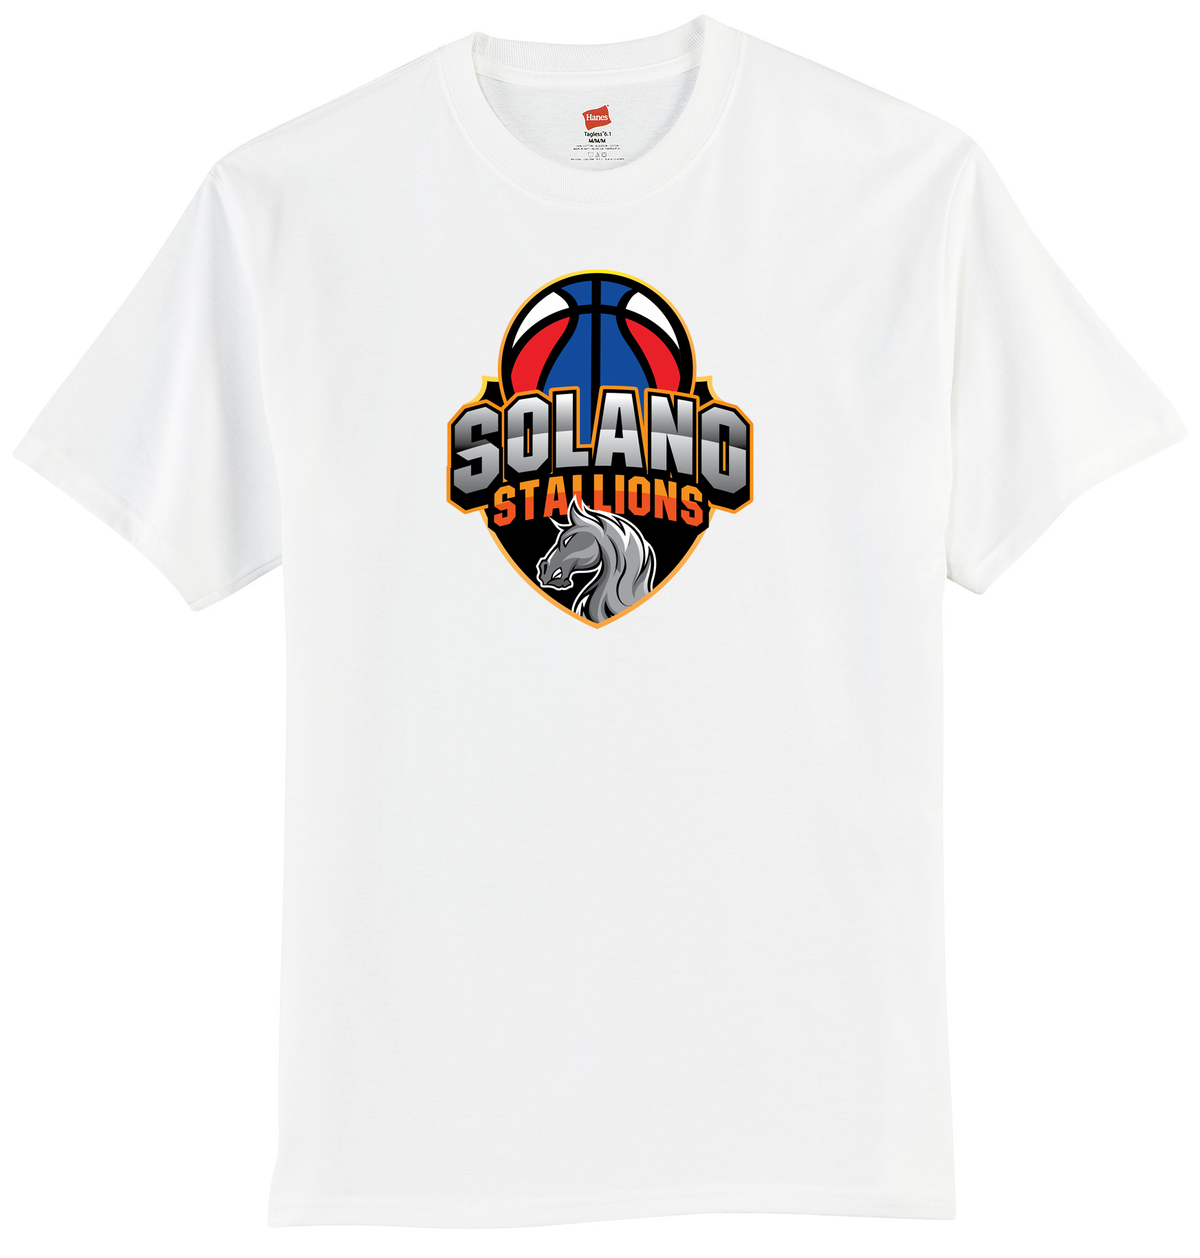 Solano Stallions T-Shirt